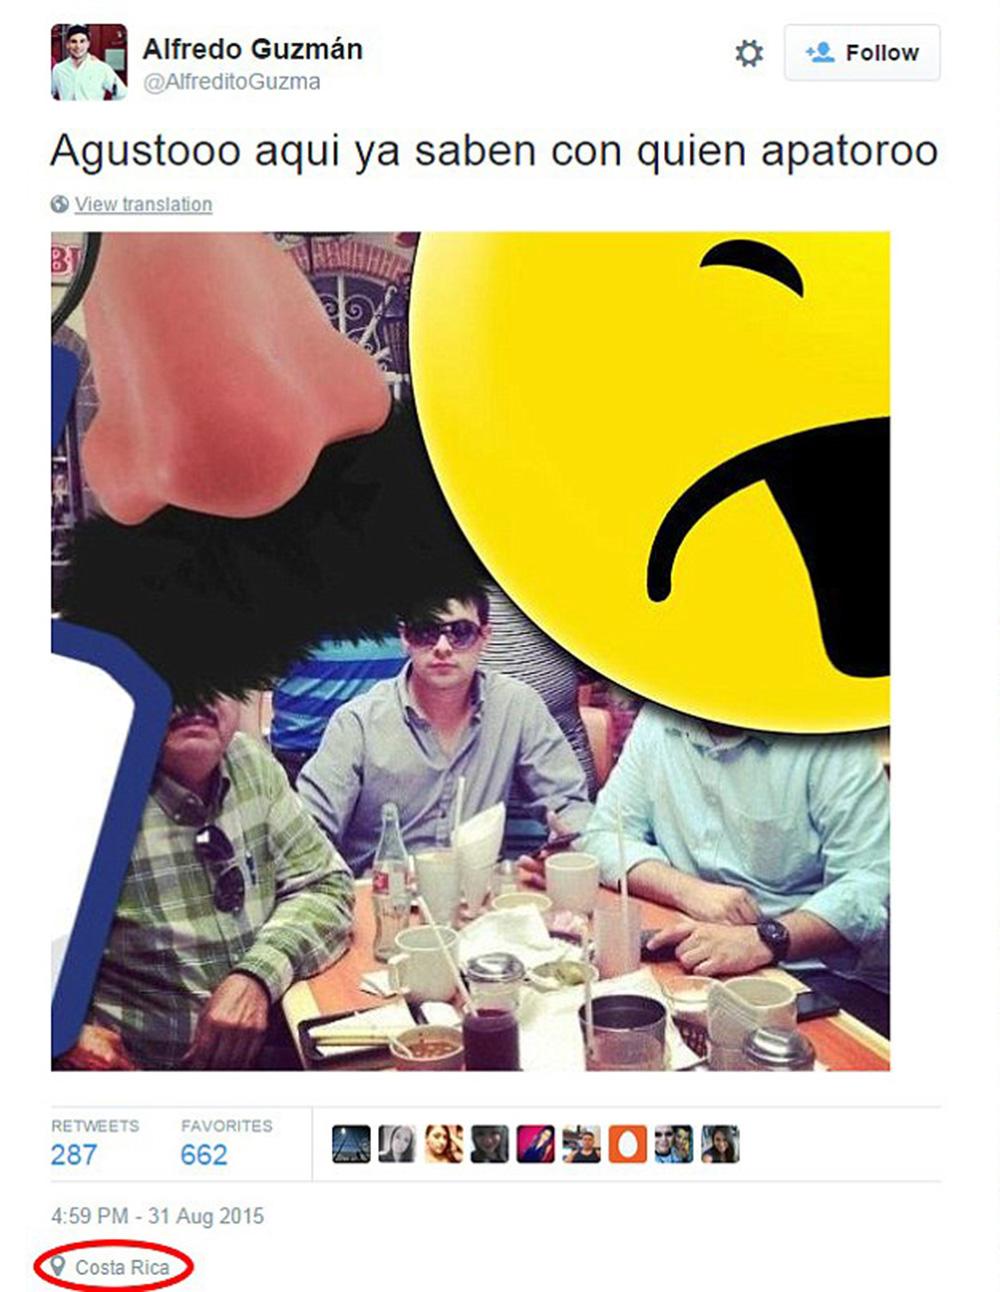 ”El Chapos” son twittrade ut en bild på vad som förefaller vara far och son på middag. ”Nöjd här, ni vet redan med vem”, skriver han.